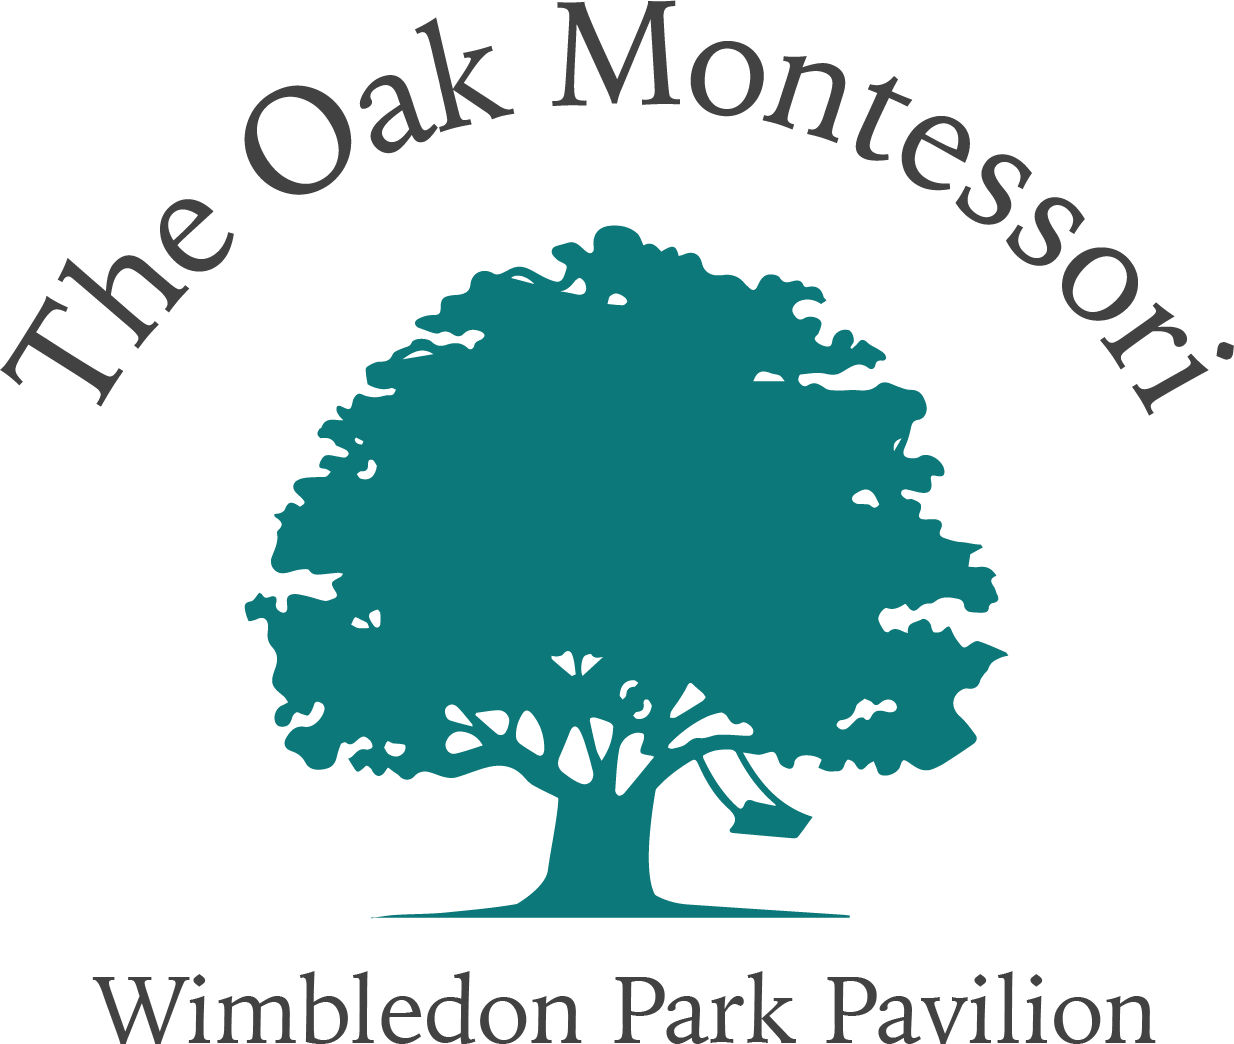 The Oak Montessori